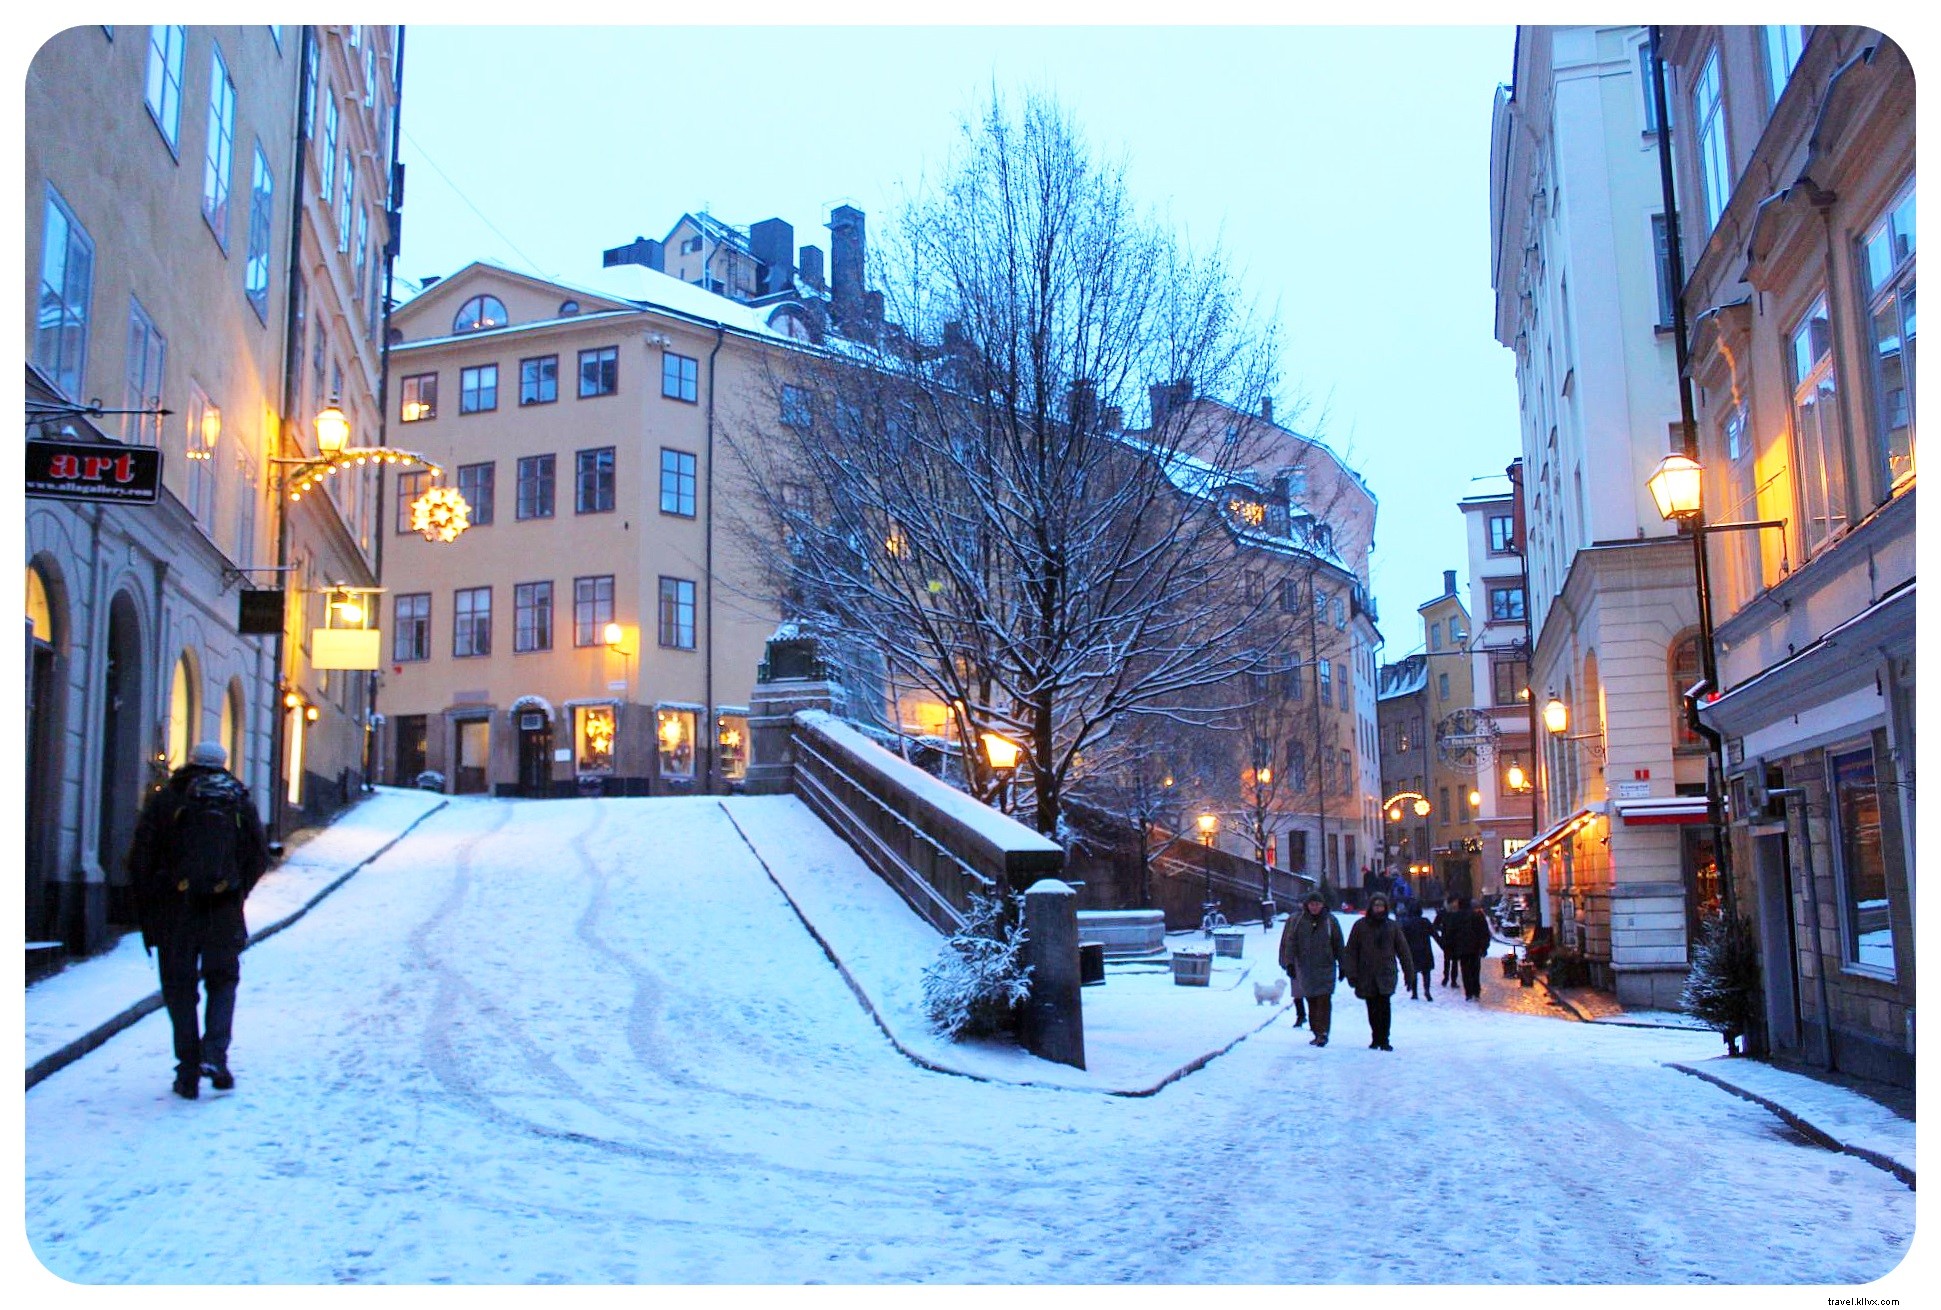 10 coisas que me surpreenderam em Estocolmo